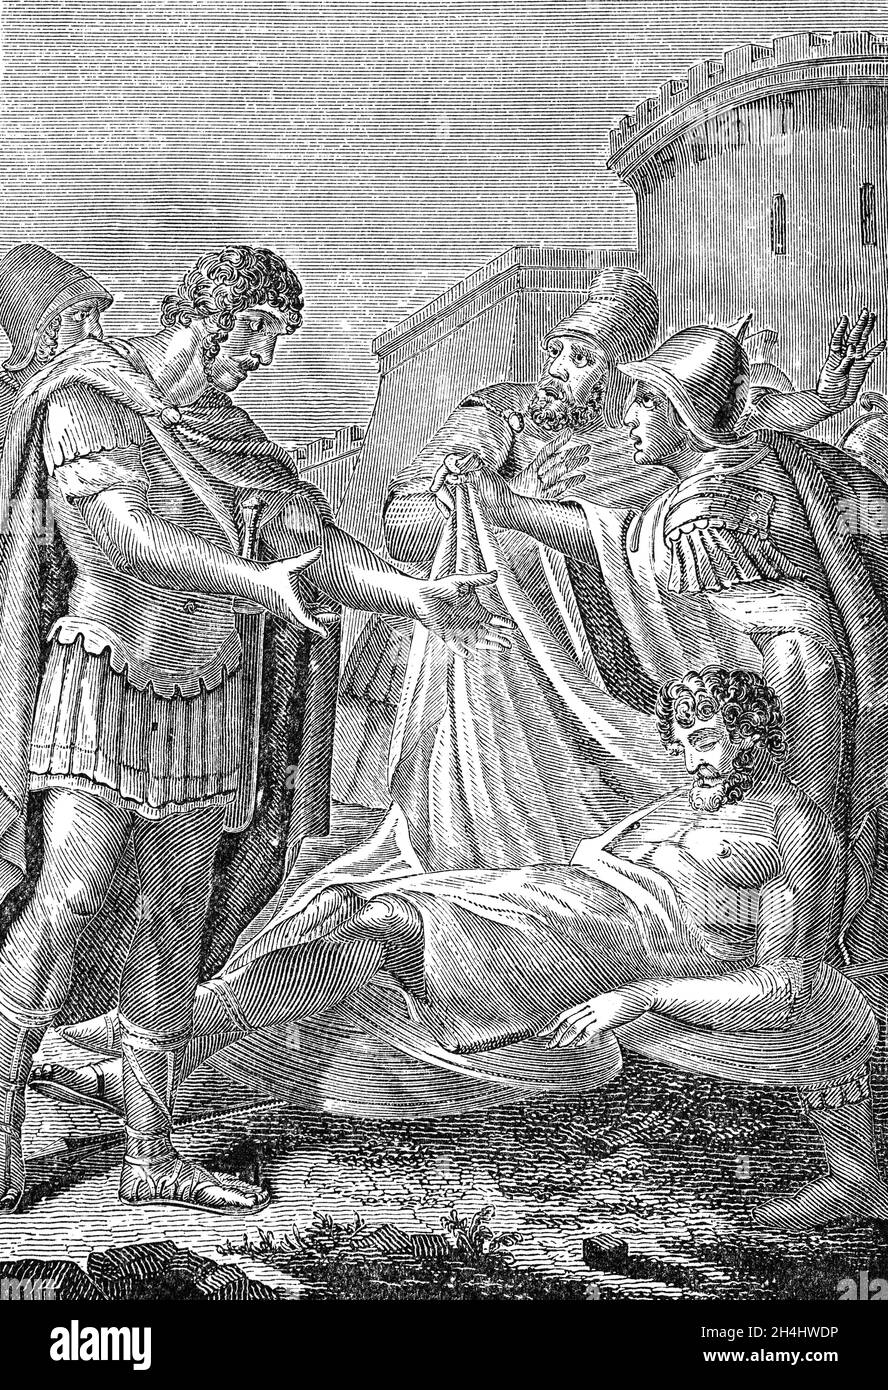 Una ilustración de finales del siglo 19th de Octavian alias Caesar Augustus (63BC-AD 14), viendo el cuerpo de Mark Antony. Octavian fue el primer emperador romano, reinando desde el año 27 aC hasta su muerte en el año 14 d.C. Fundador del Principado Romano (la primera fase del Imperio Romano) Fue uno de los líderes más efectivos de la historia humana. Durante el conflicto en curso con Antony y Cleopatra, Octavian persiguió y derrotó a sus fuerzas en Alejandría en el año 30 aC, tras lo cual Antony se suicidó, cayendo sobre su propia espada. Foto de stock